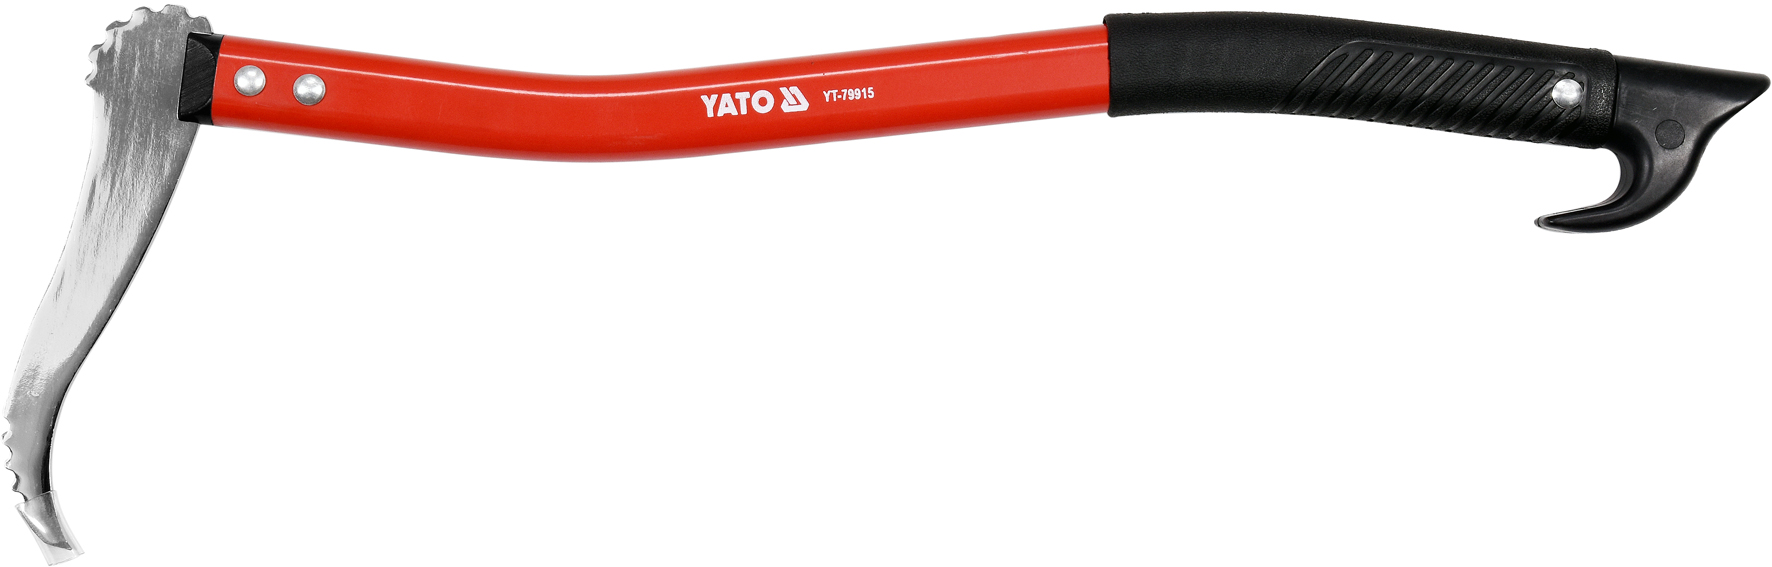 Крюк с рукояткой 580мм для перетаскивания бревен  YATO YT-79915